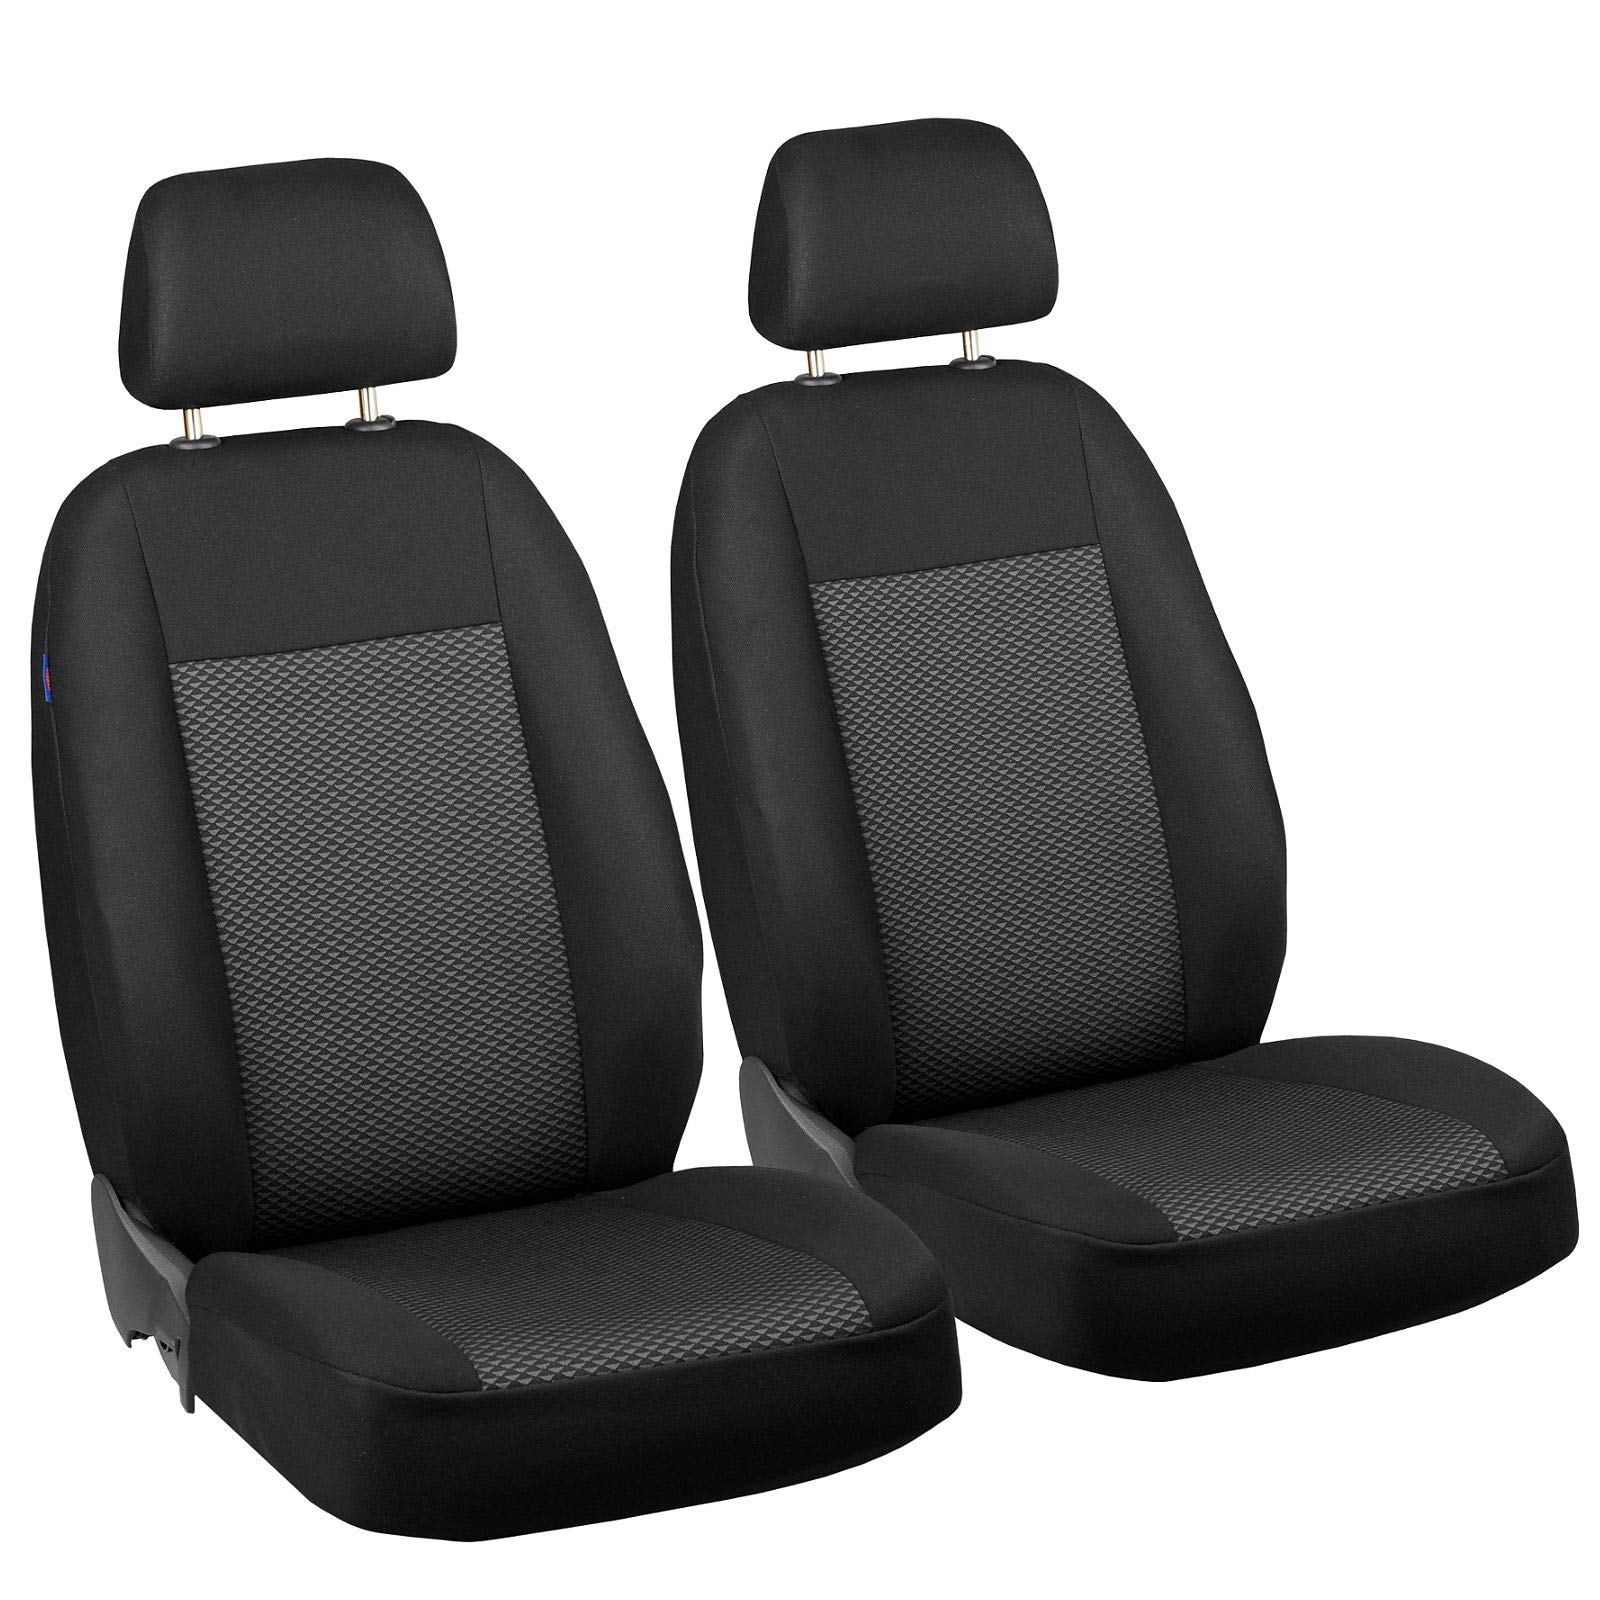 Zakschneider B-KLASSE Vorne Sitzbezüge - für Fahrer und Beifahrer - Farbe Premium Schwarz-graue Dreiecke Optimum von Zakschneider